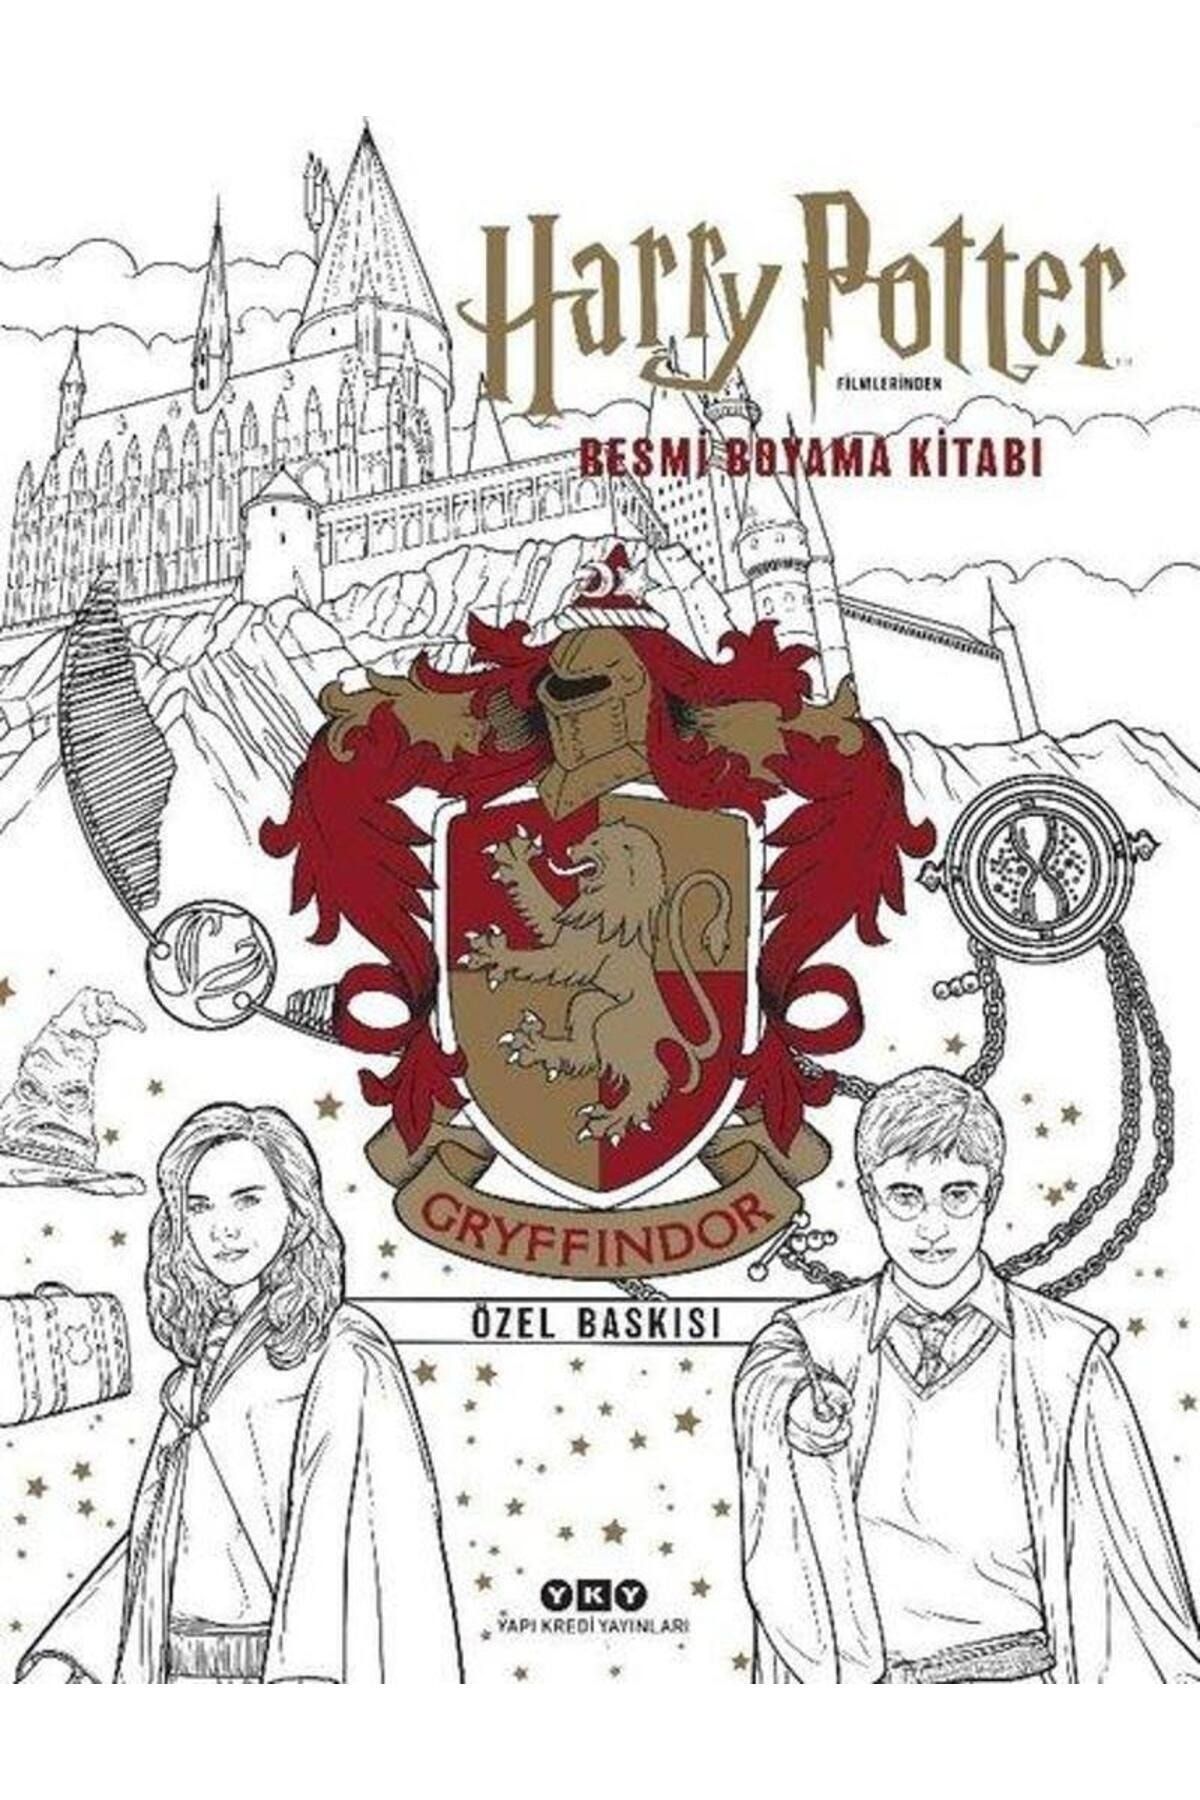 Yapı Kredi Yayınları Harry Potter Filmlerinden Resmi Boyama Kitabı Gryffindor Özel Baskısı